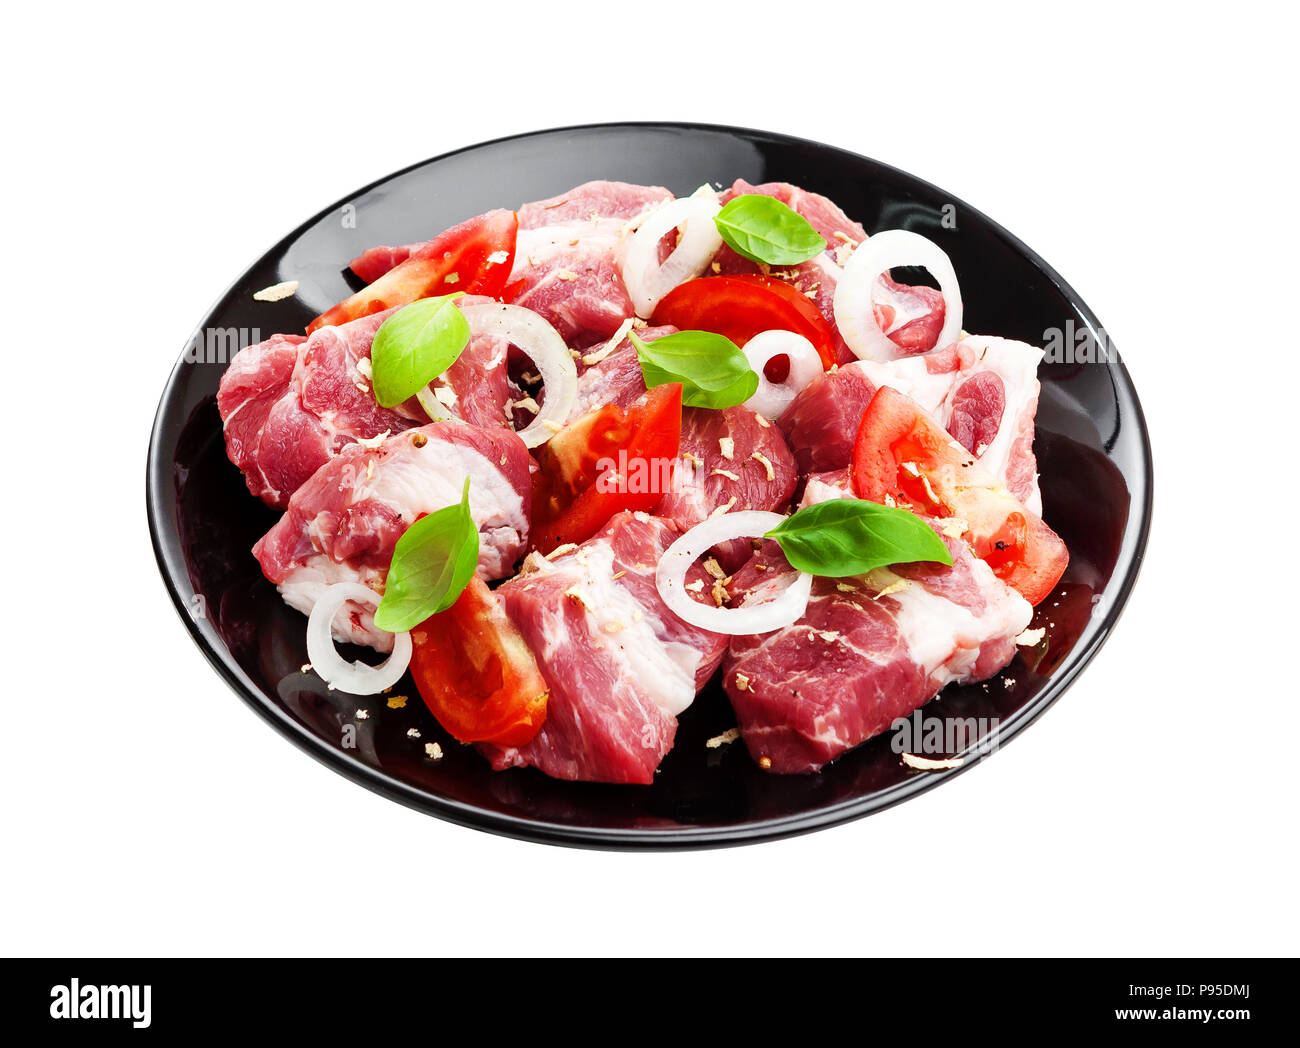 Ungekocht Shish Kebab an der Platte. Rohes Schweinefleisch Grillen auf weißem Hintergrund Stockfoto